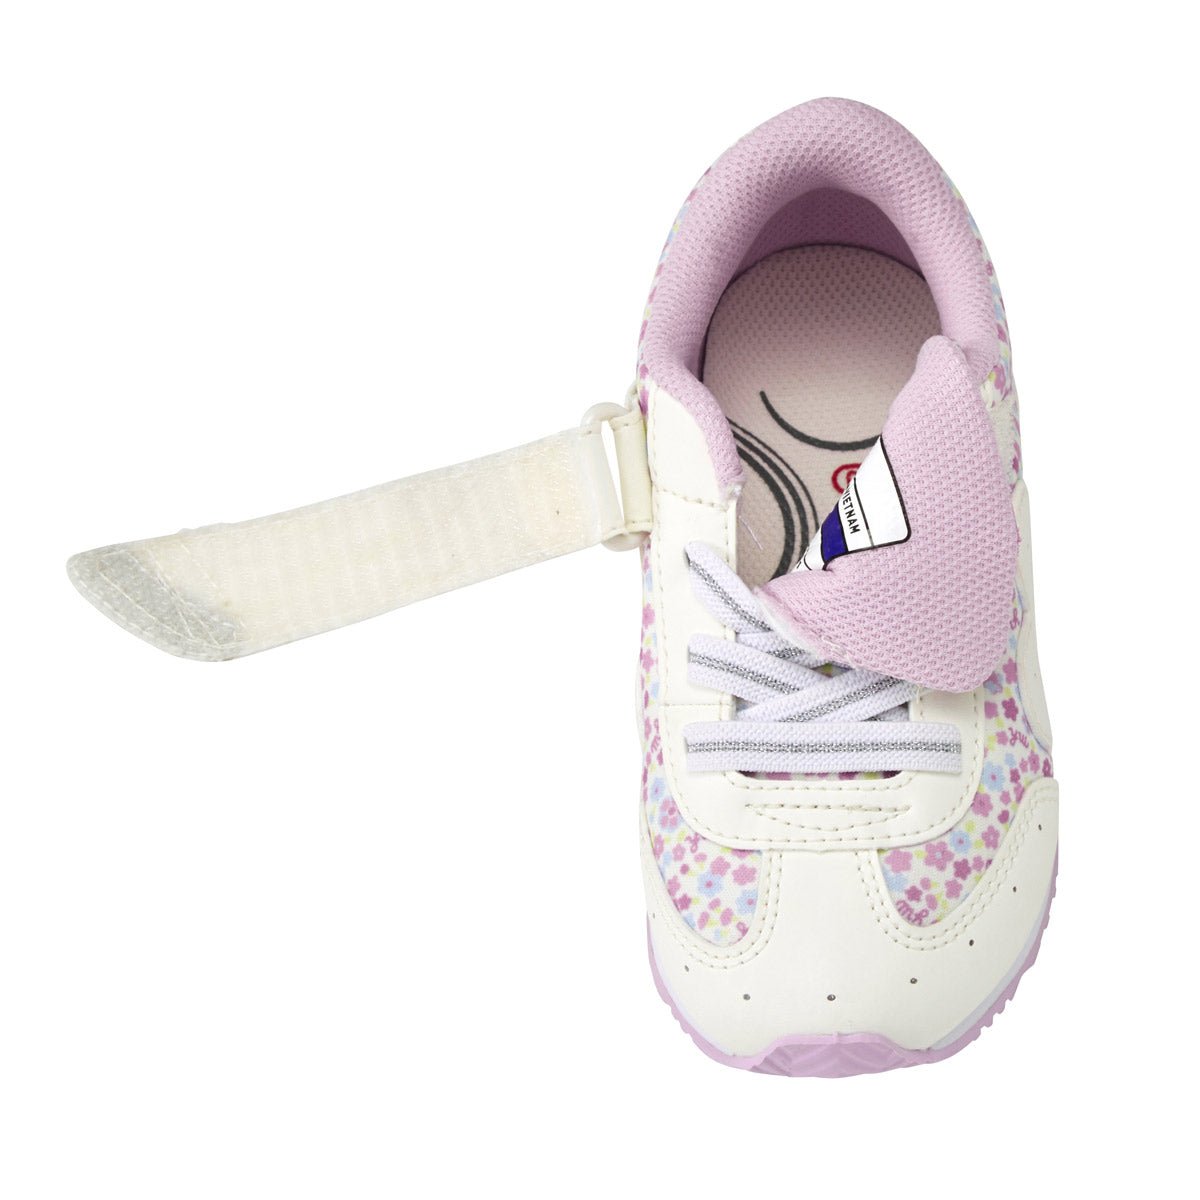 MIKI HOUSE & Mizuno Shoes for Kids -Floral - MIKI HOUSE USA